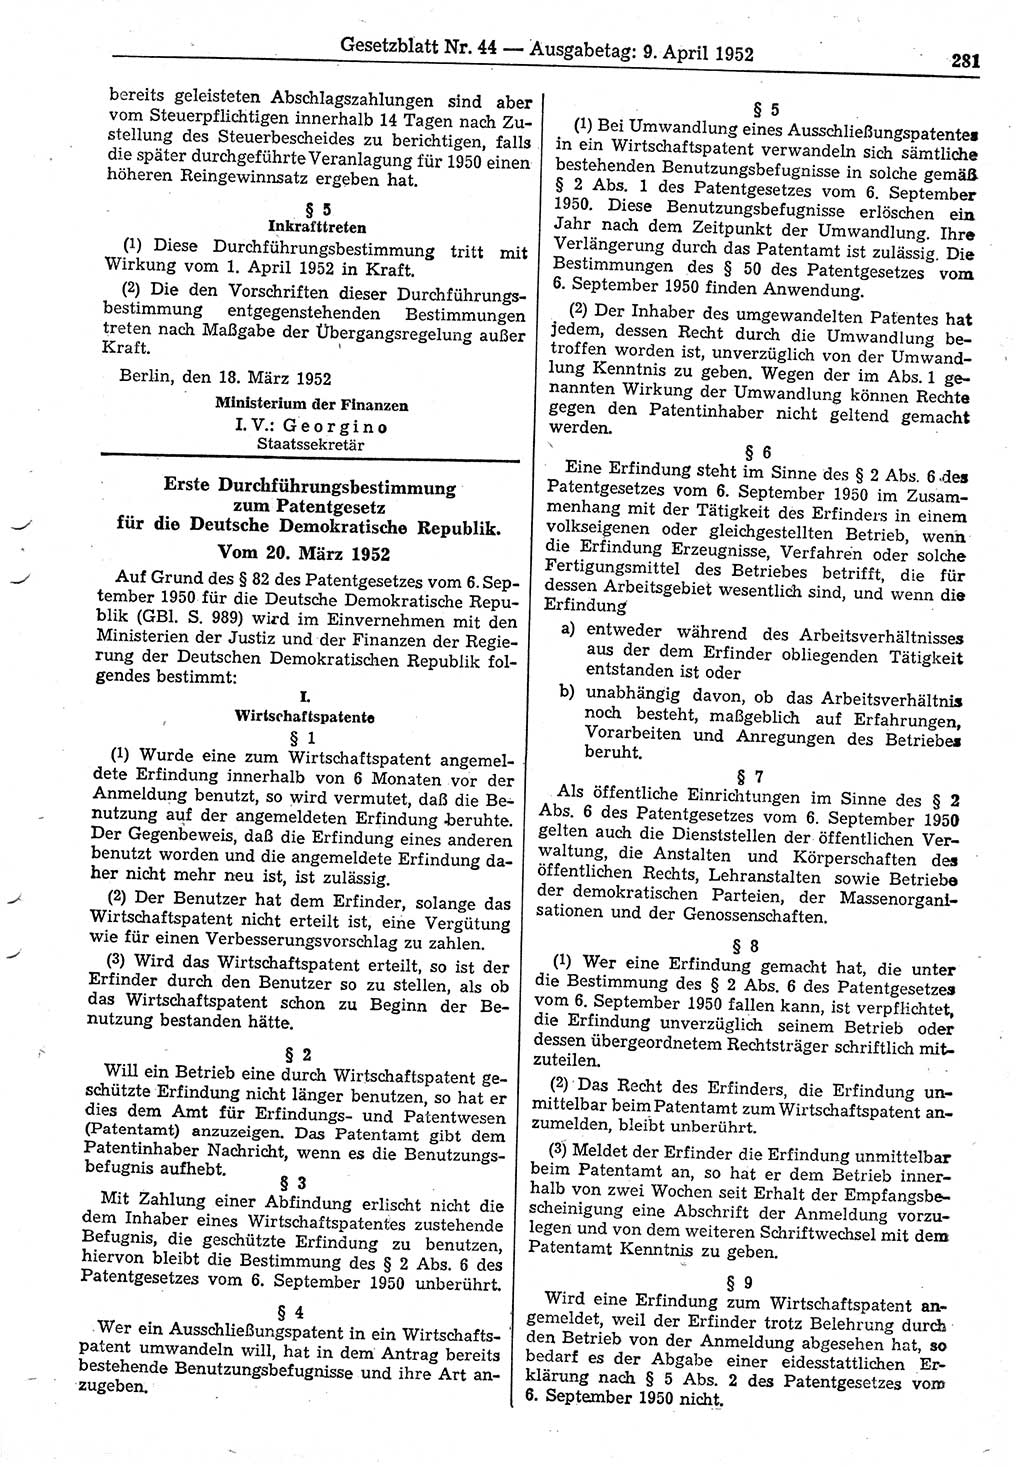 Gesetzblatt (GBl.) der Deutschen Demokratischen Republik (DDR) 1952, Seite 281 (GBl. DDR 1952, S. 281)